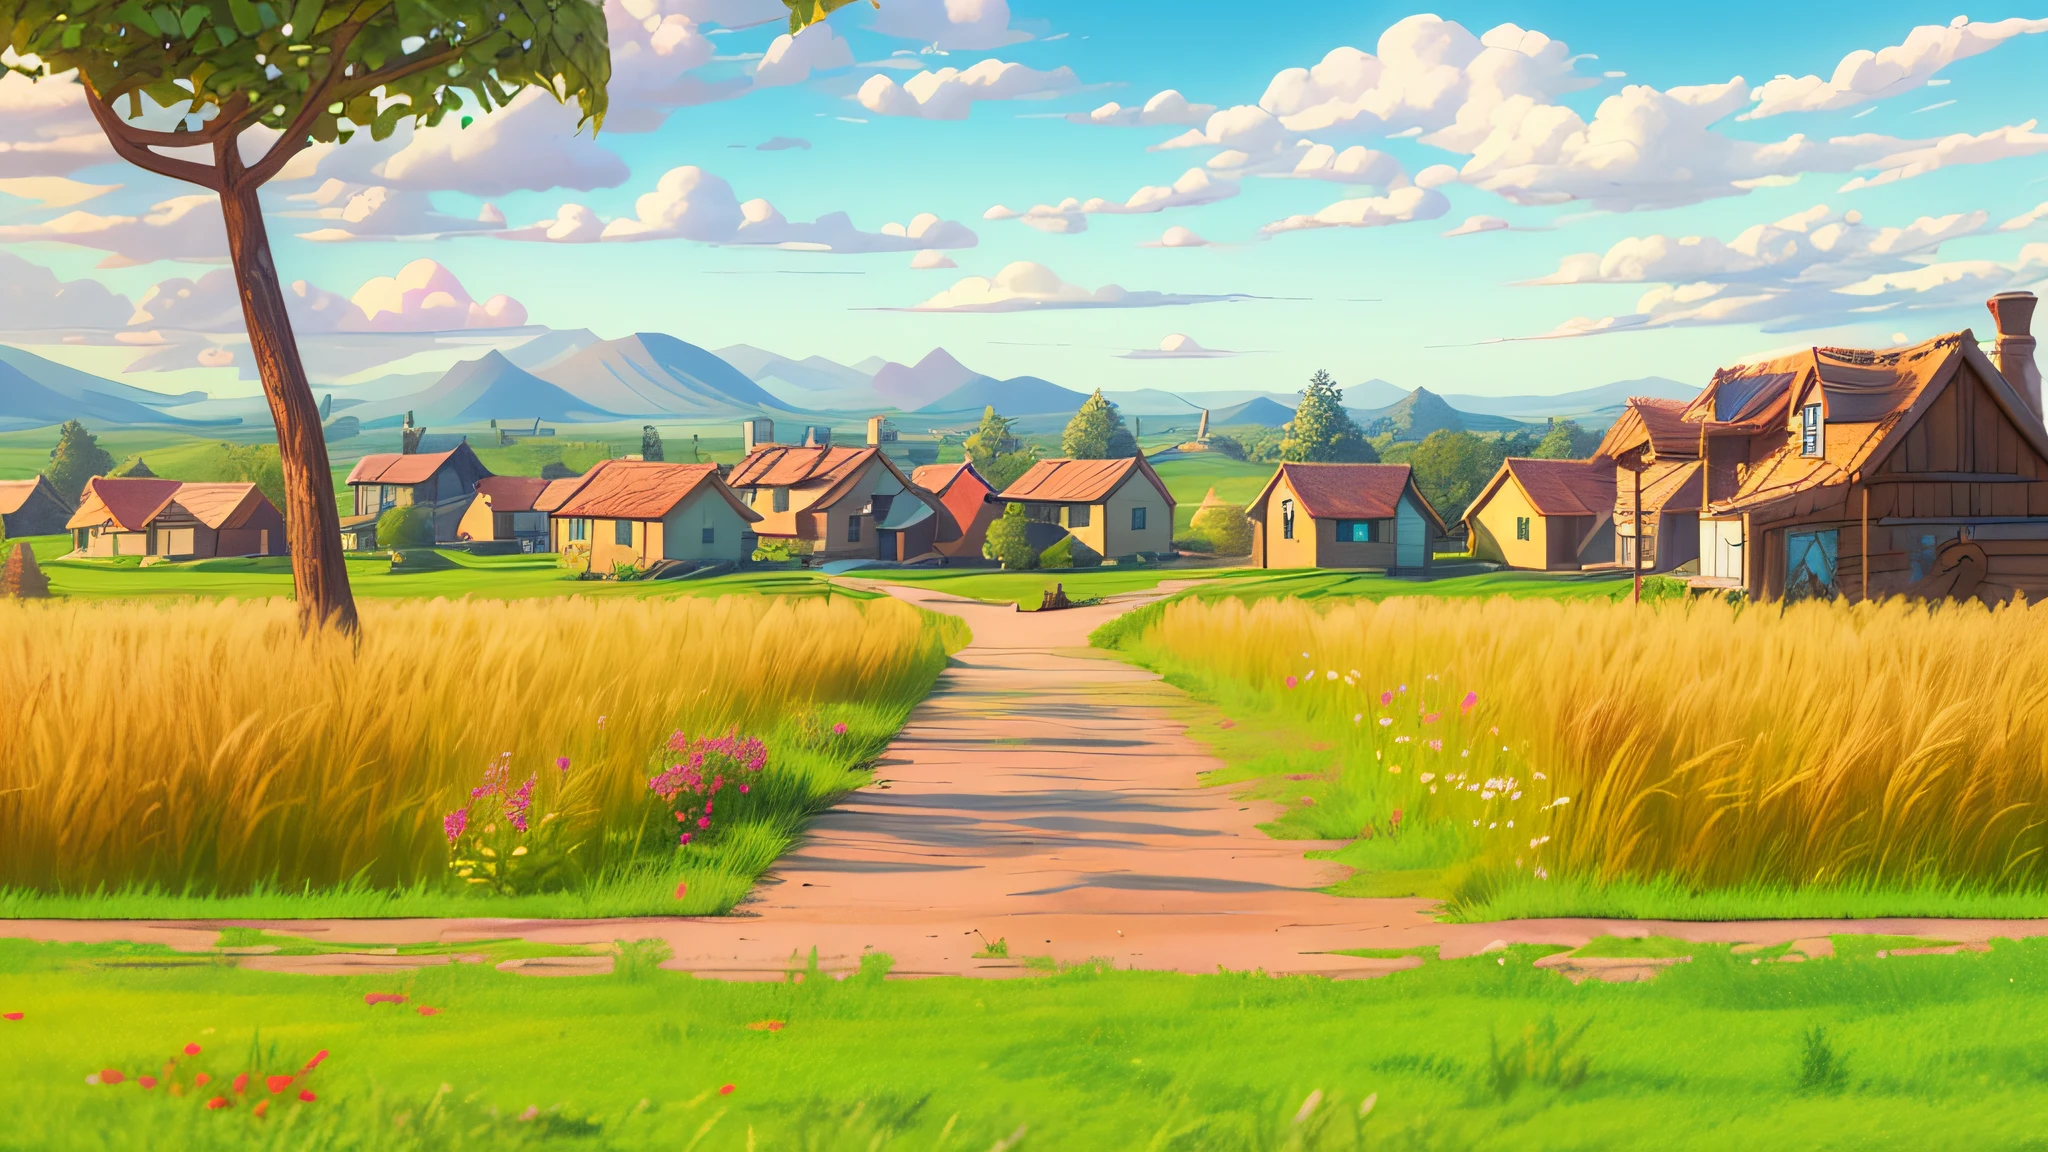 geringer Bildkontrast, geringe Helligkeit, ((Sonnenlicht von oben links:1.5)), Pixar, 3D-Animation, 3d render, ein Bauernhof auf dem Land, afternoon Tageslicht with long shadow, Ein Feld aus gelbem Weizen, Es gibt grünes Gras wächst im Bett des Weizenfeldes und unter dem Weizen, (Cartoon-Feldweg durchschneidet das Feld:1.3), Ein großer Baum. Die Scheune hat eine rote und einige weiße, in der linken unteren Ecke gibt es Grasland, hohe Detaildarstellung, Variieren der Darstellung, Arnold render, Künstlerisches 3D-Rendering, Beruf CG-Shooting, künstlerische Komposition, professionelle Einrahmung, scharfes und detailreiches Bild, lebendige Farben, Tageslicht, sehr detailliert, Filmkorn, kristallklar, kompliziert, Glatt, elegant, Meisterwerk, 4k, 8k, GI-Beleuchtung, Hyperdetailliert, HD